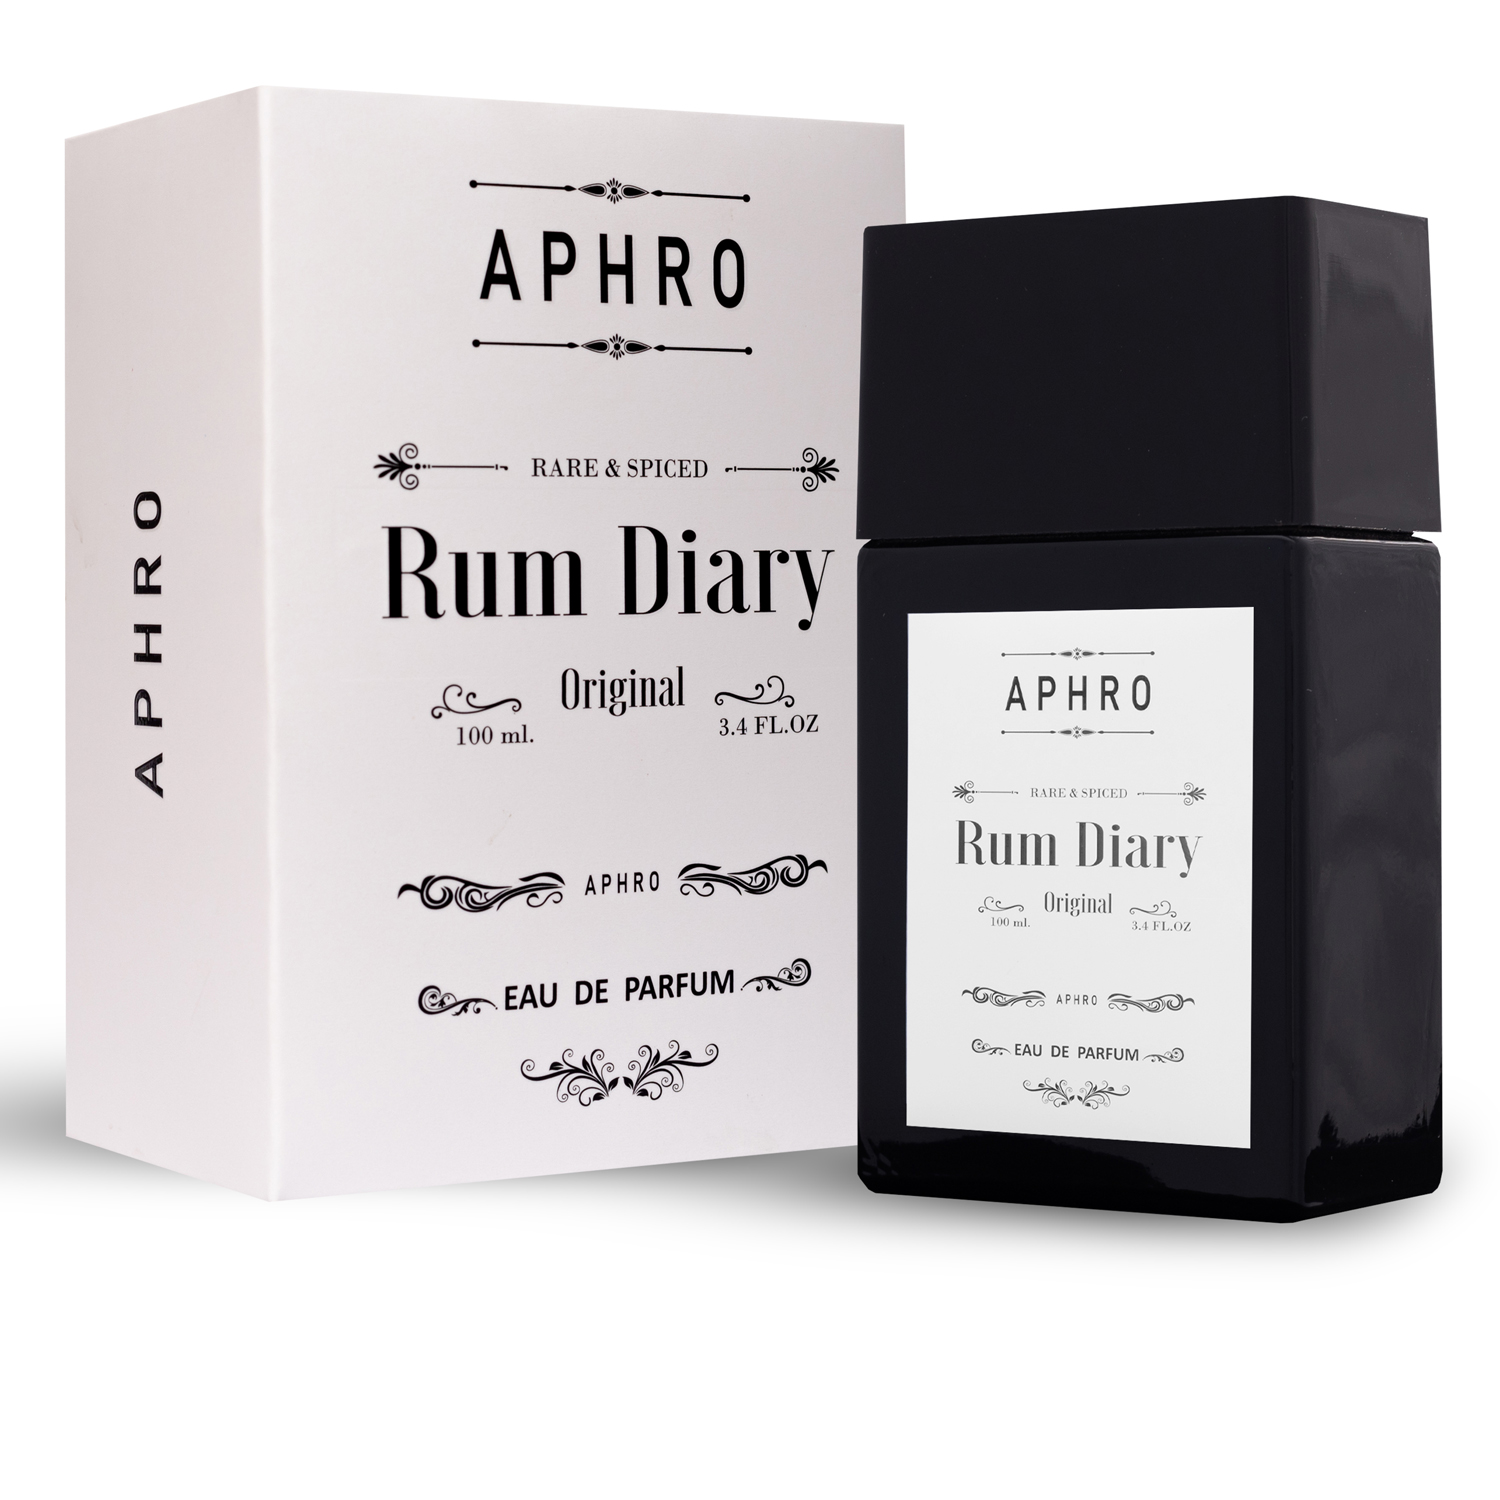 Rum Diary - Aphro